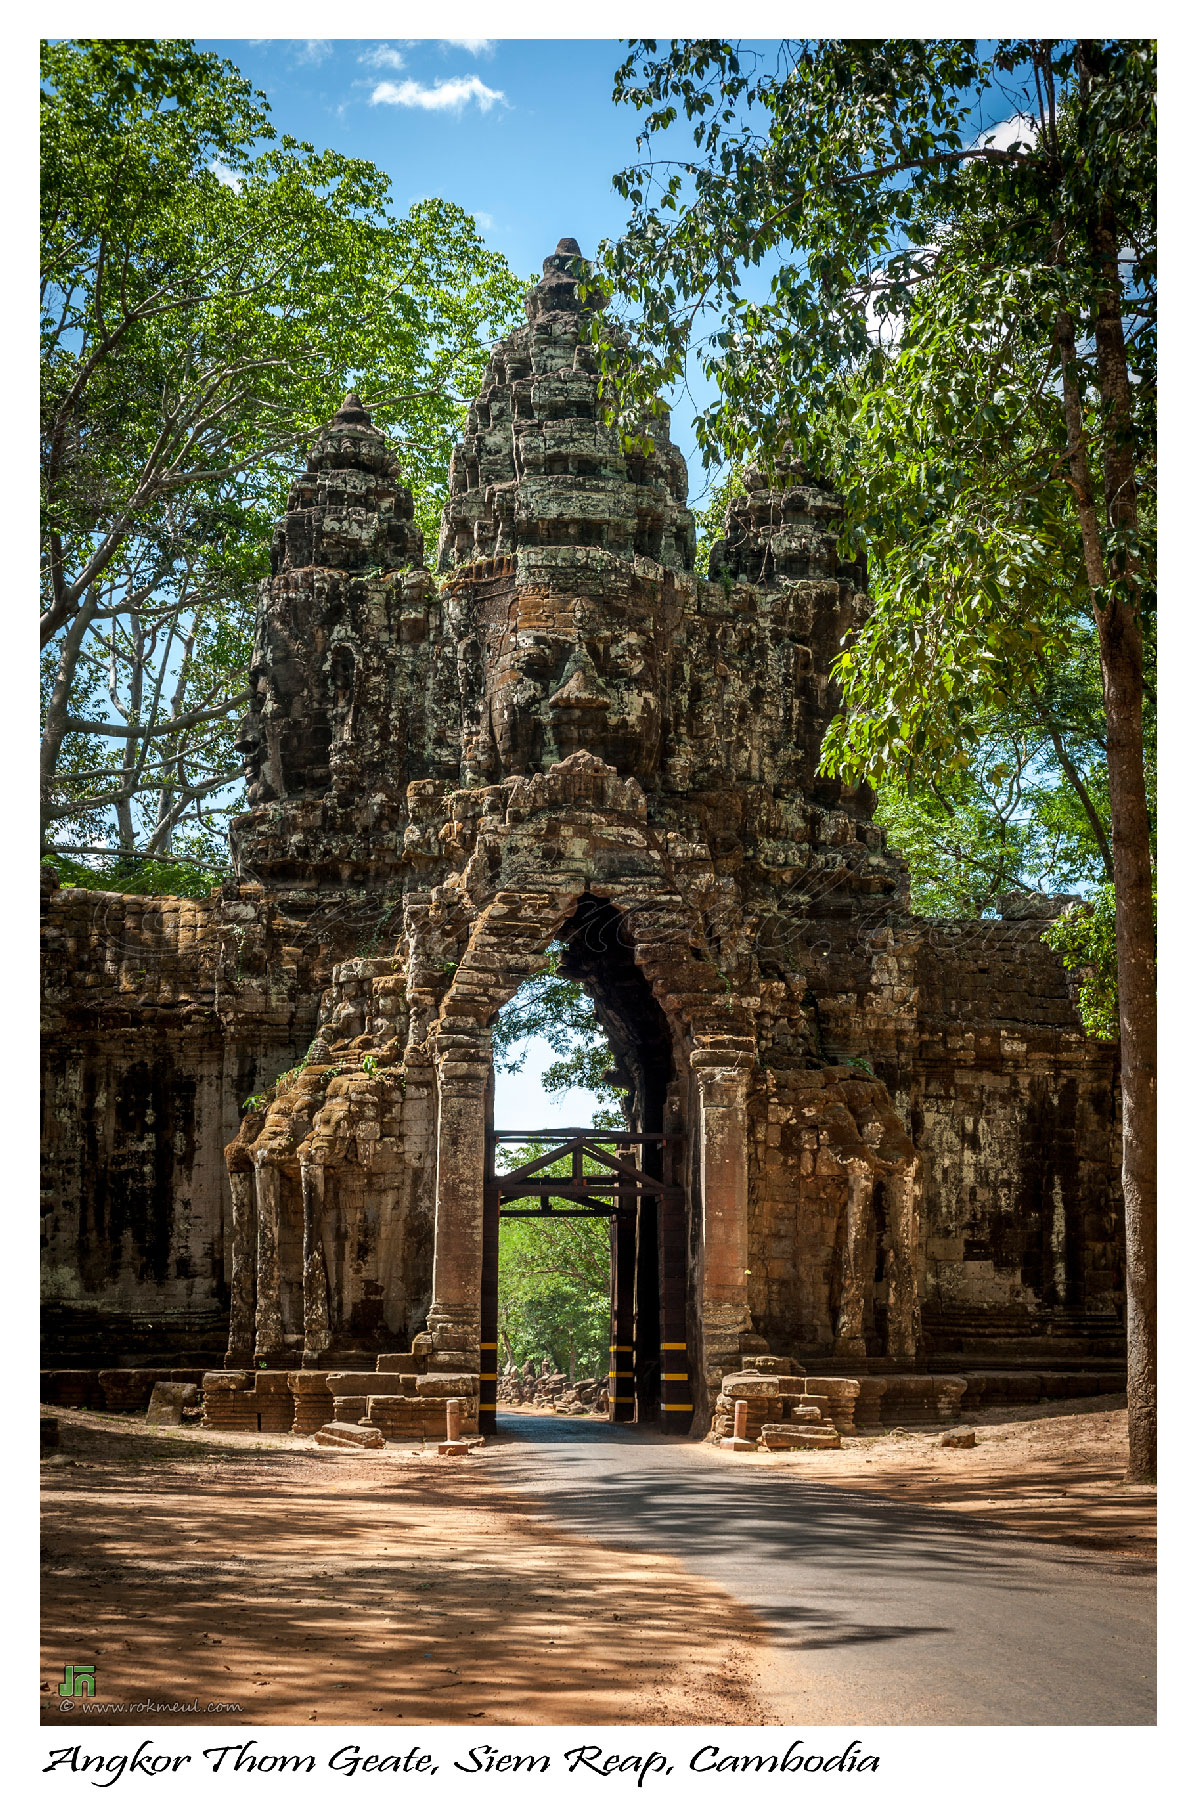 Angkor Thom Gate, Siem Reap